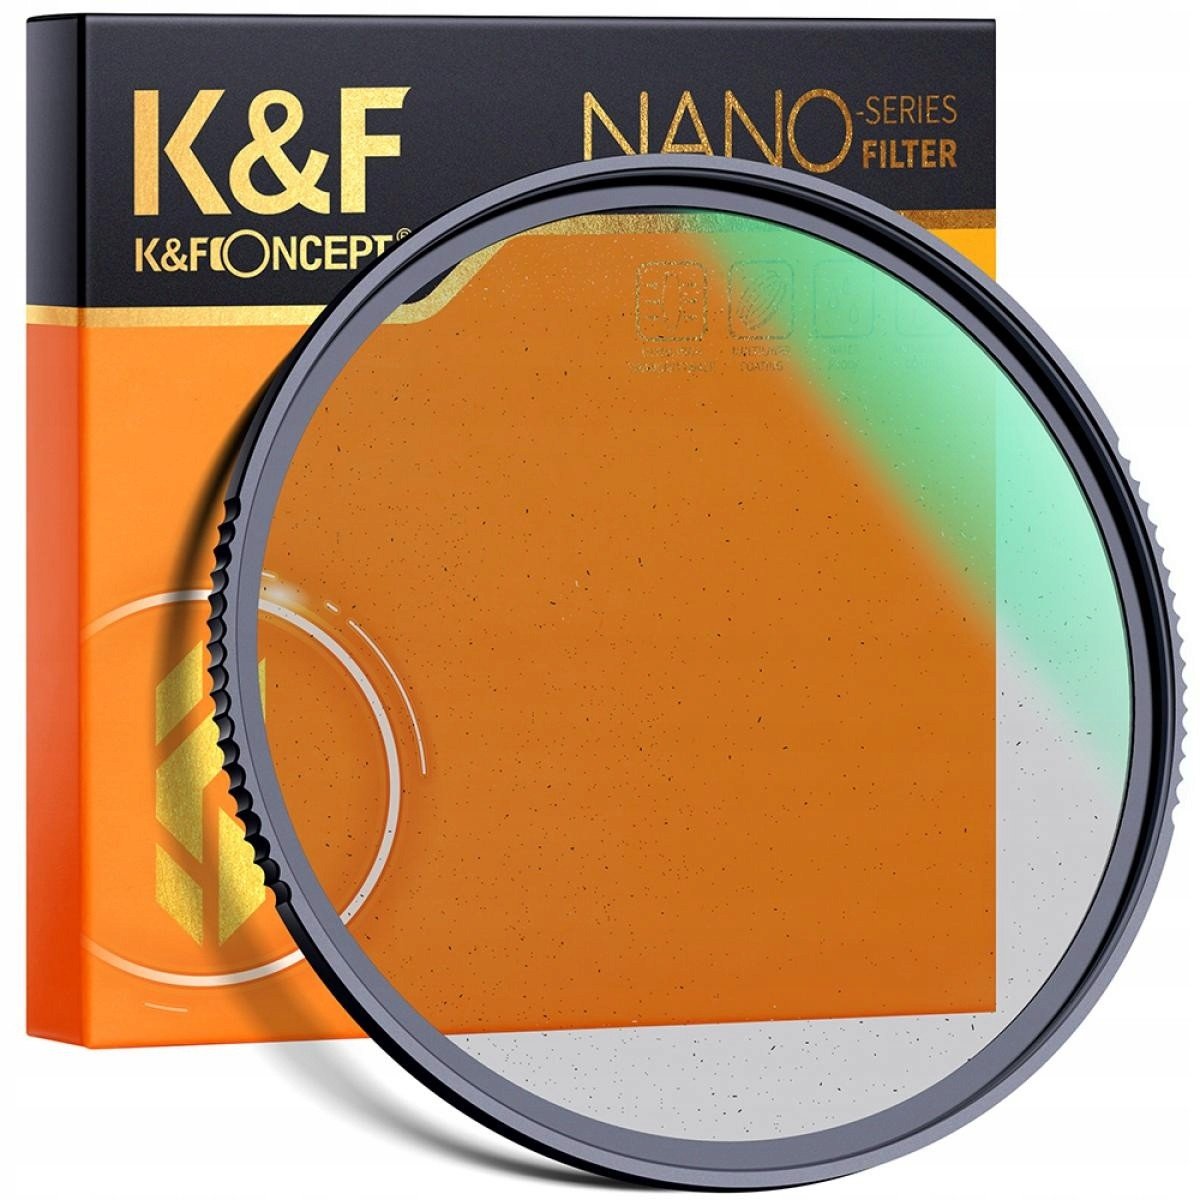 K&F FILTR dyfuzyjny Black Mist 1/4 NanoX 67mm